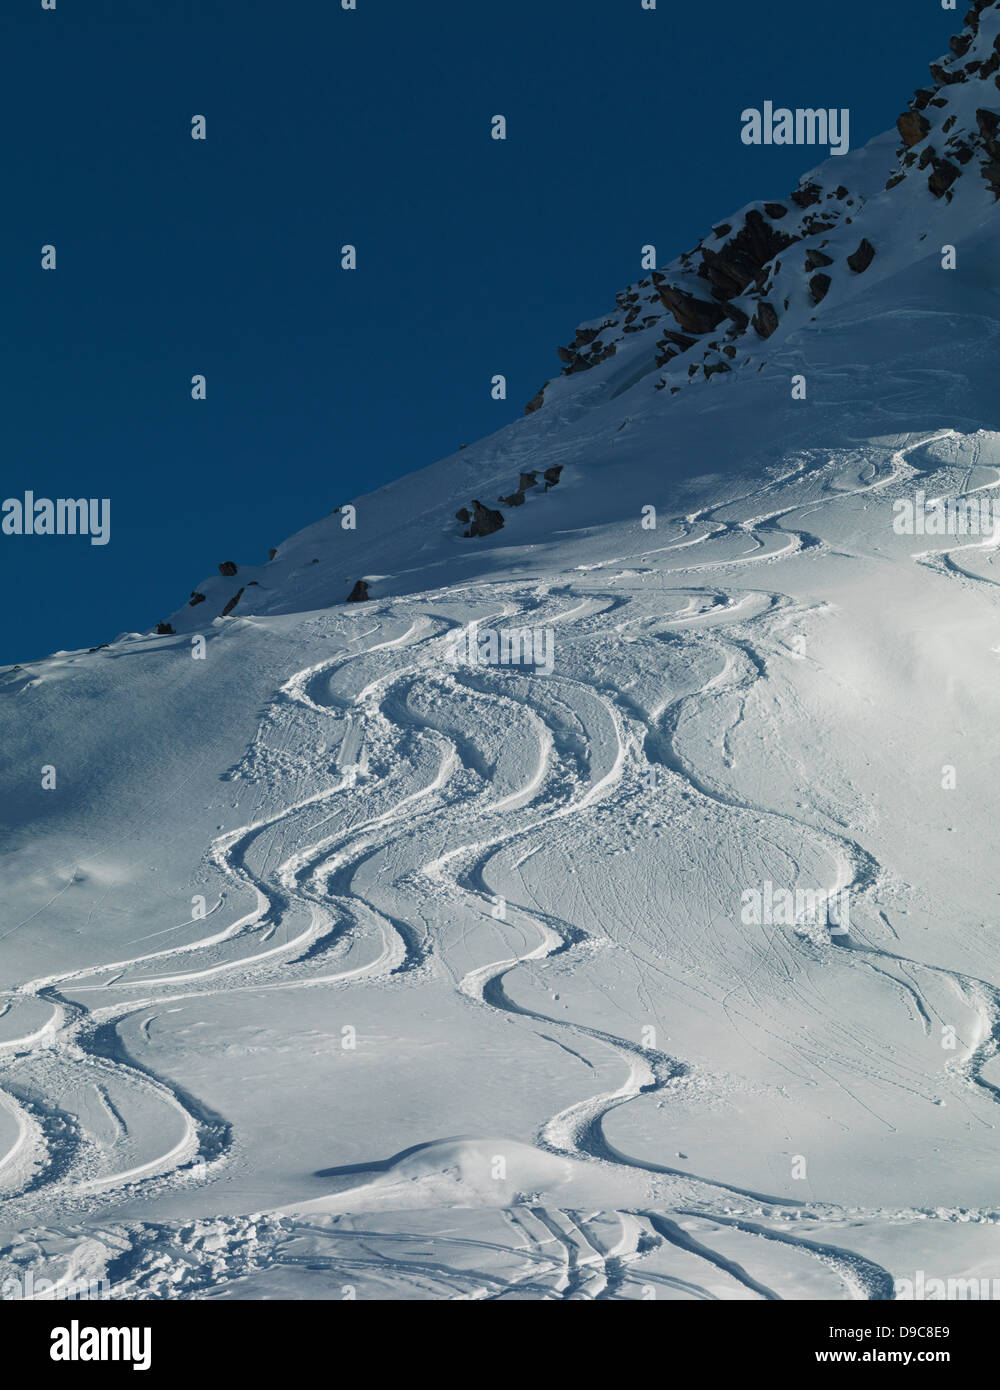 Ski tracks in snow on mountain Stock Photo